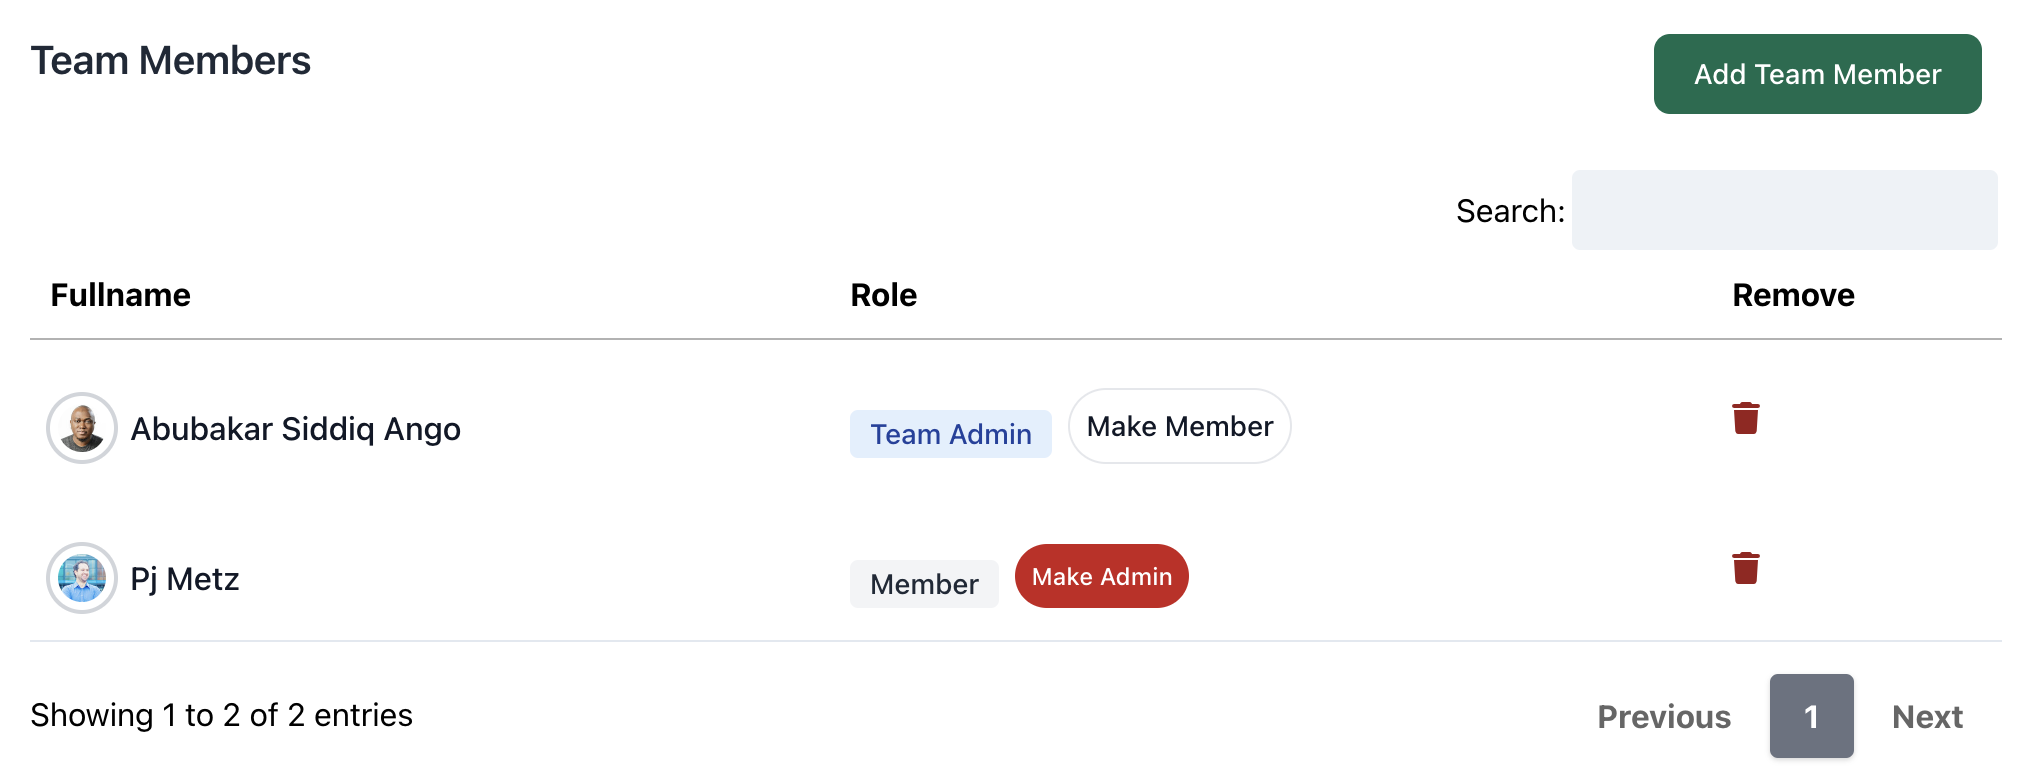 Team Member Admin image